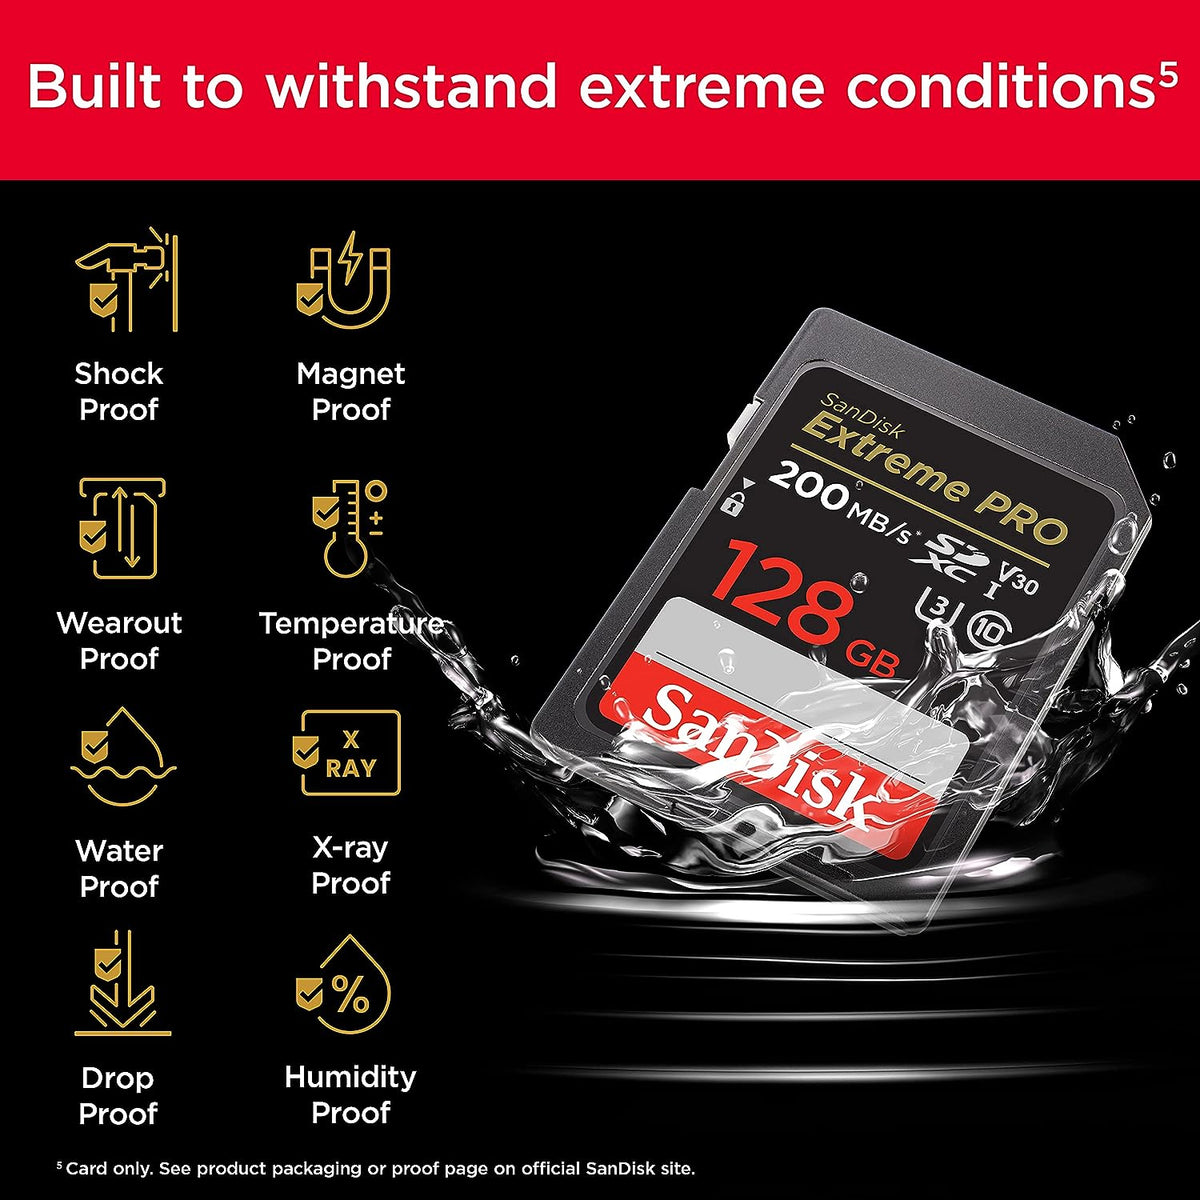 SanDisk Extreme PRO SDXC UHS-I Memory Card